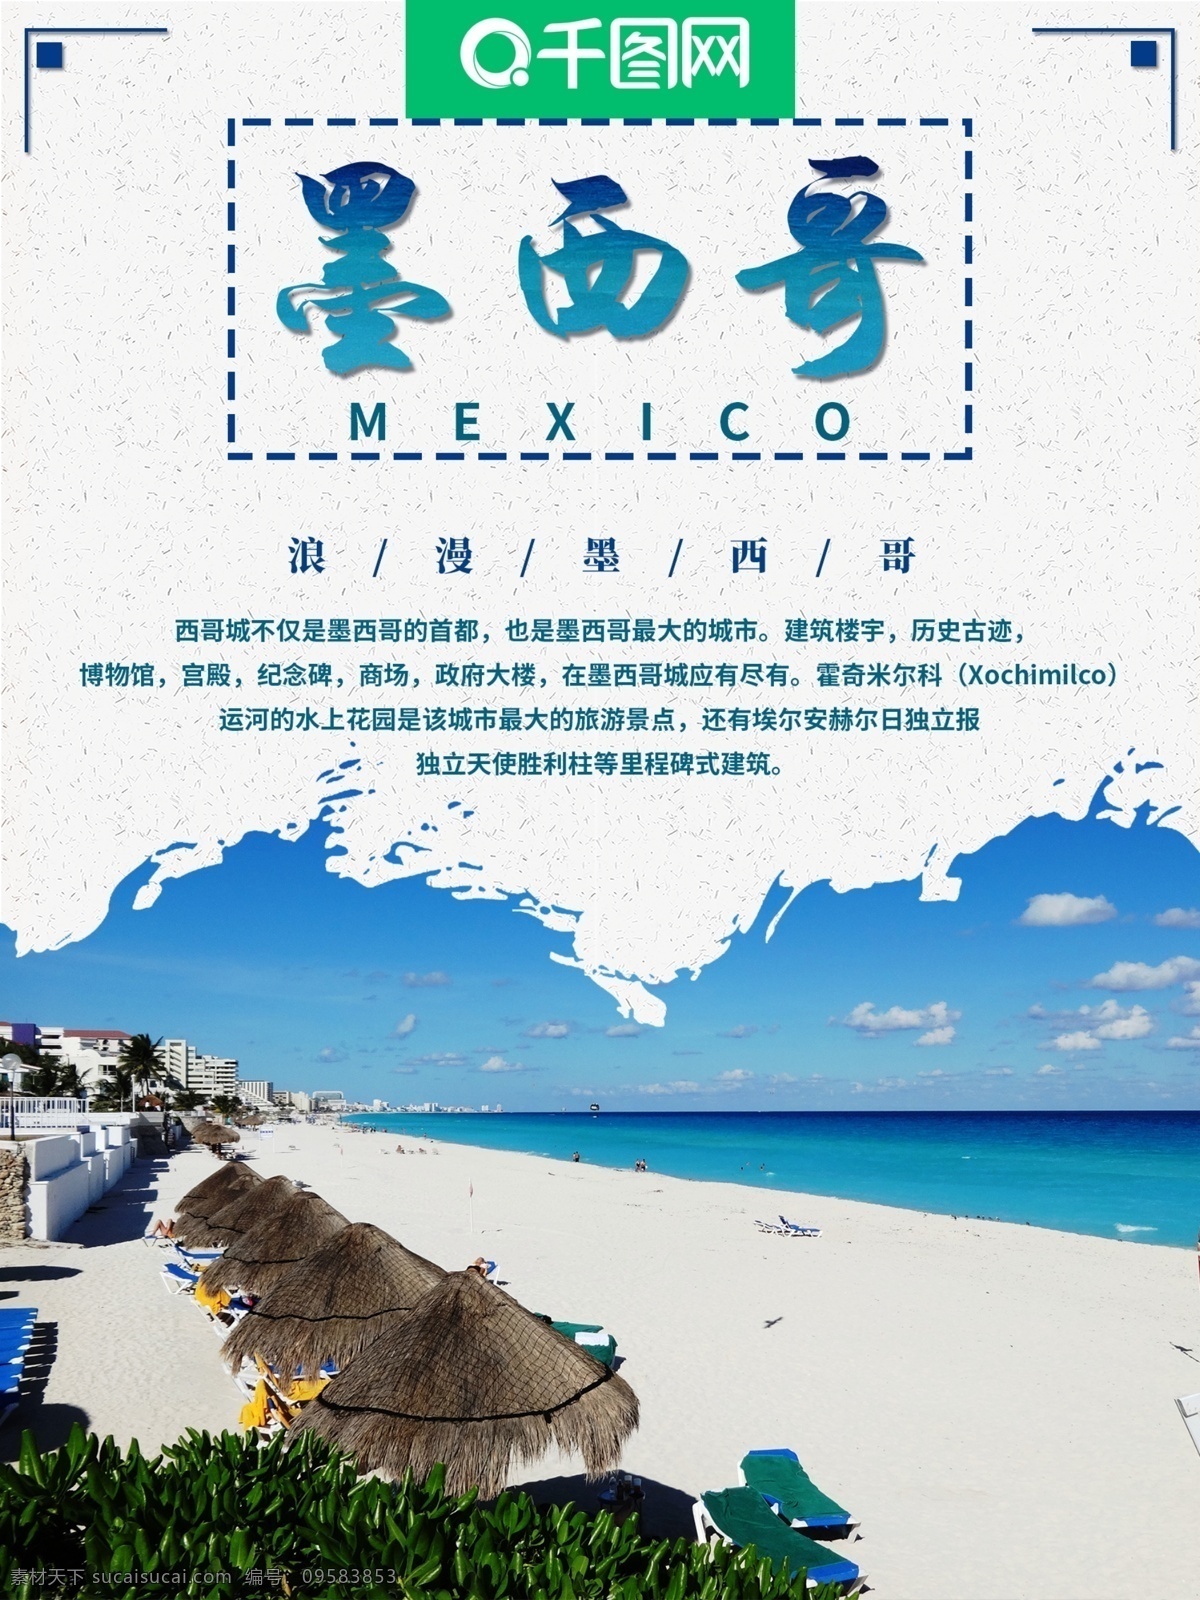 原创 墨西哥 旅游 海报 外国 清晰